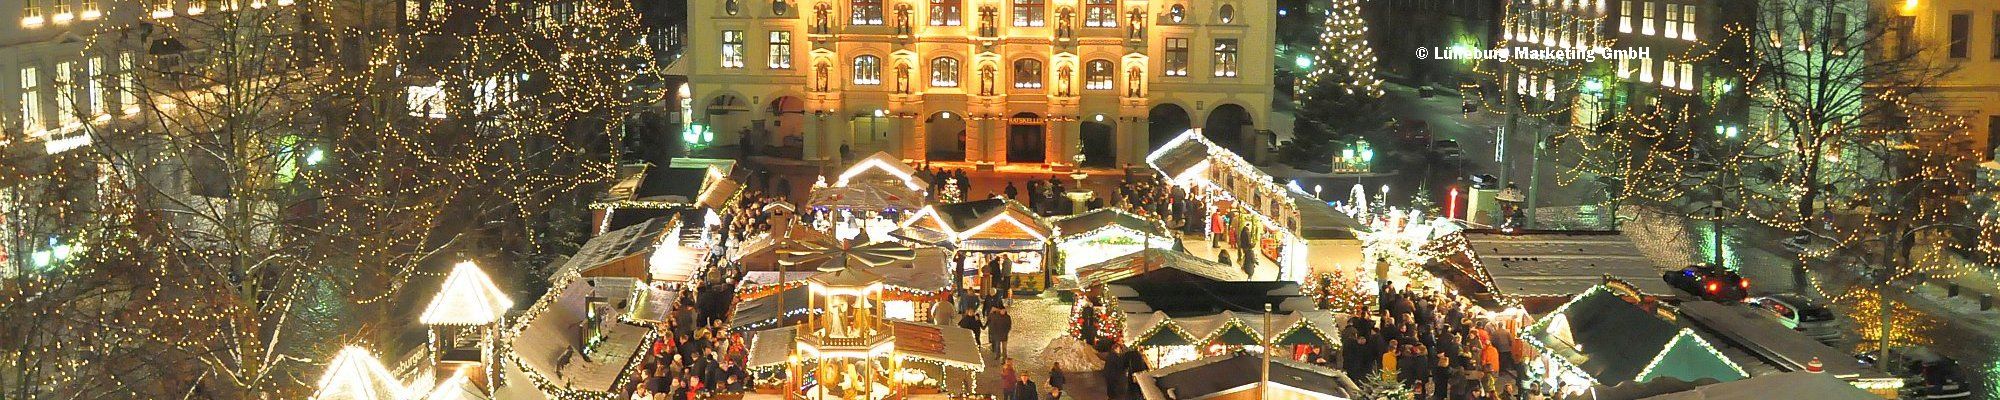 Weihnachtsmarkt in Lüneburg © Lüneburg Marketing GmbH